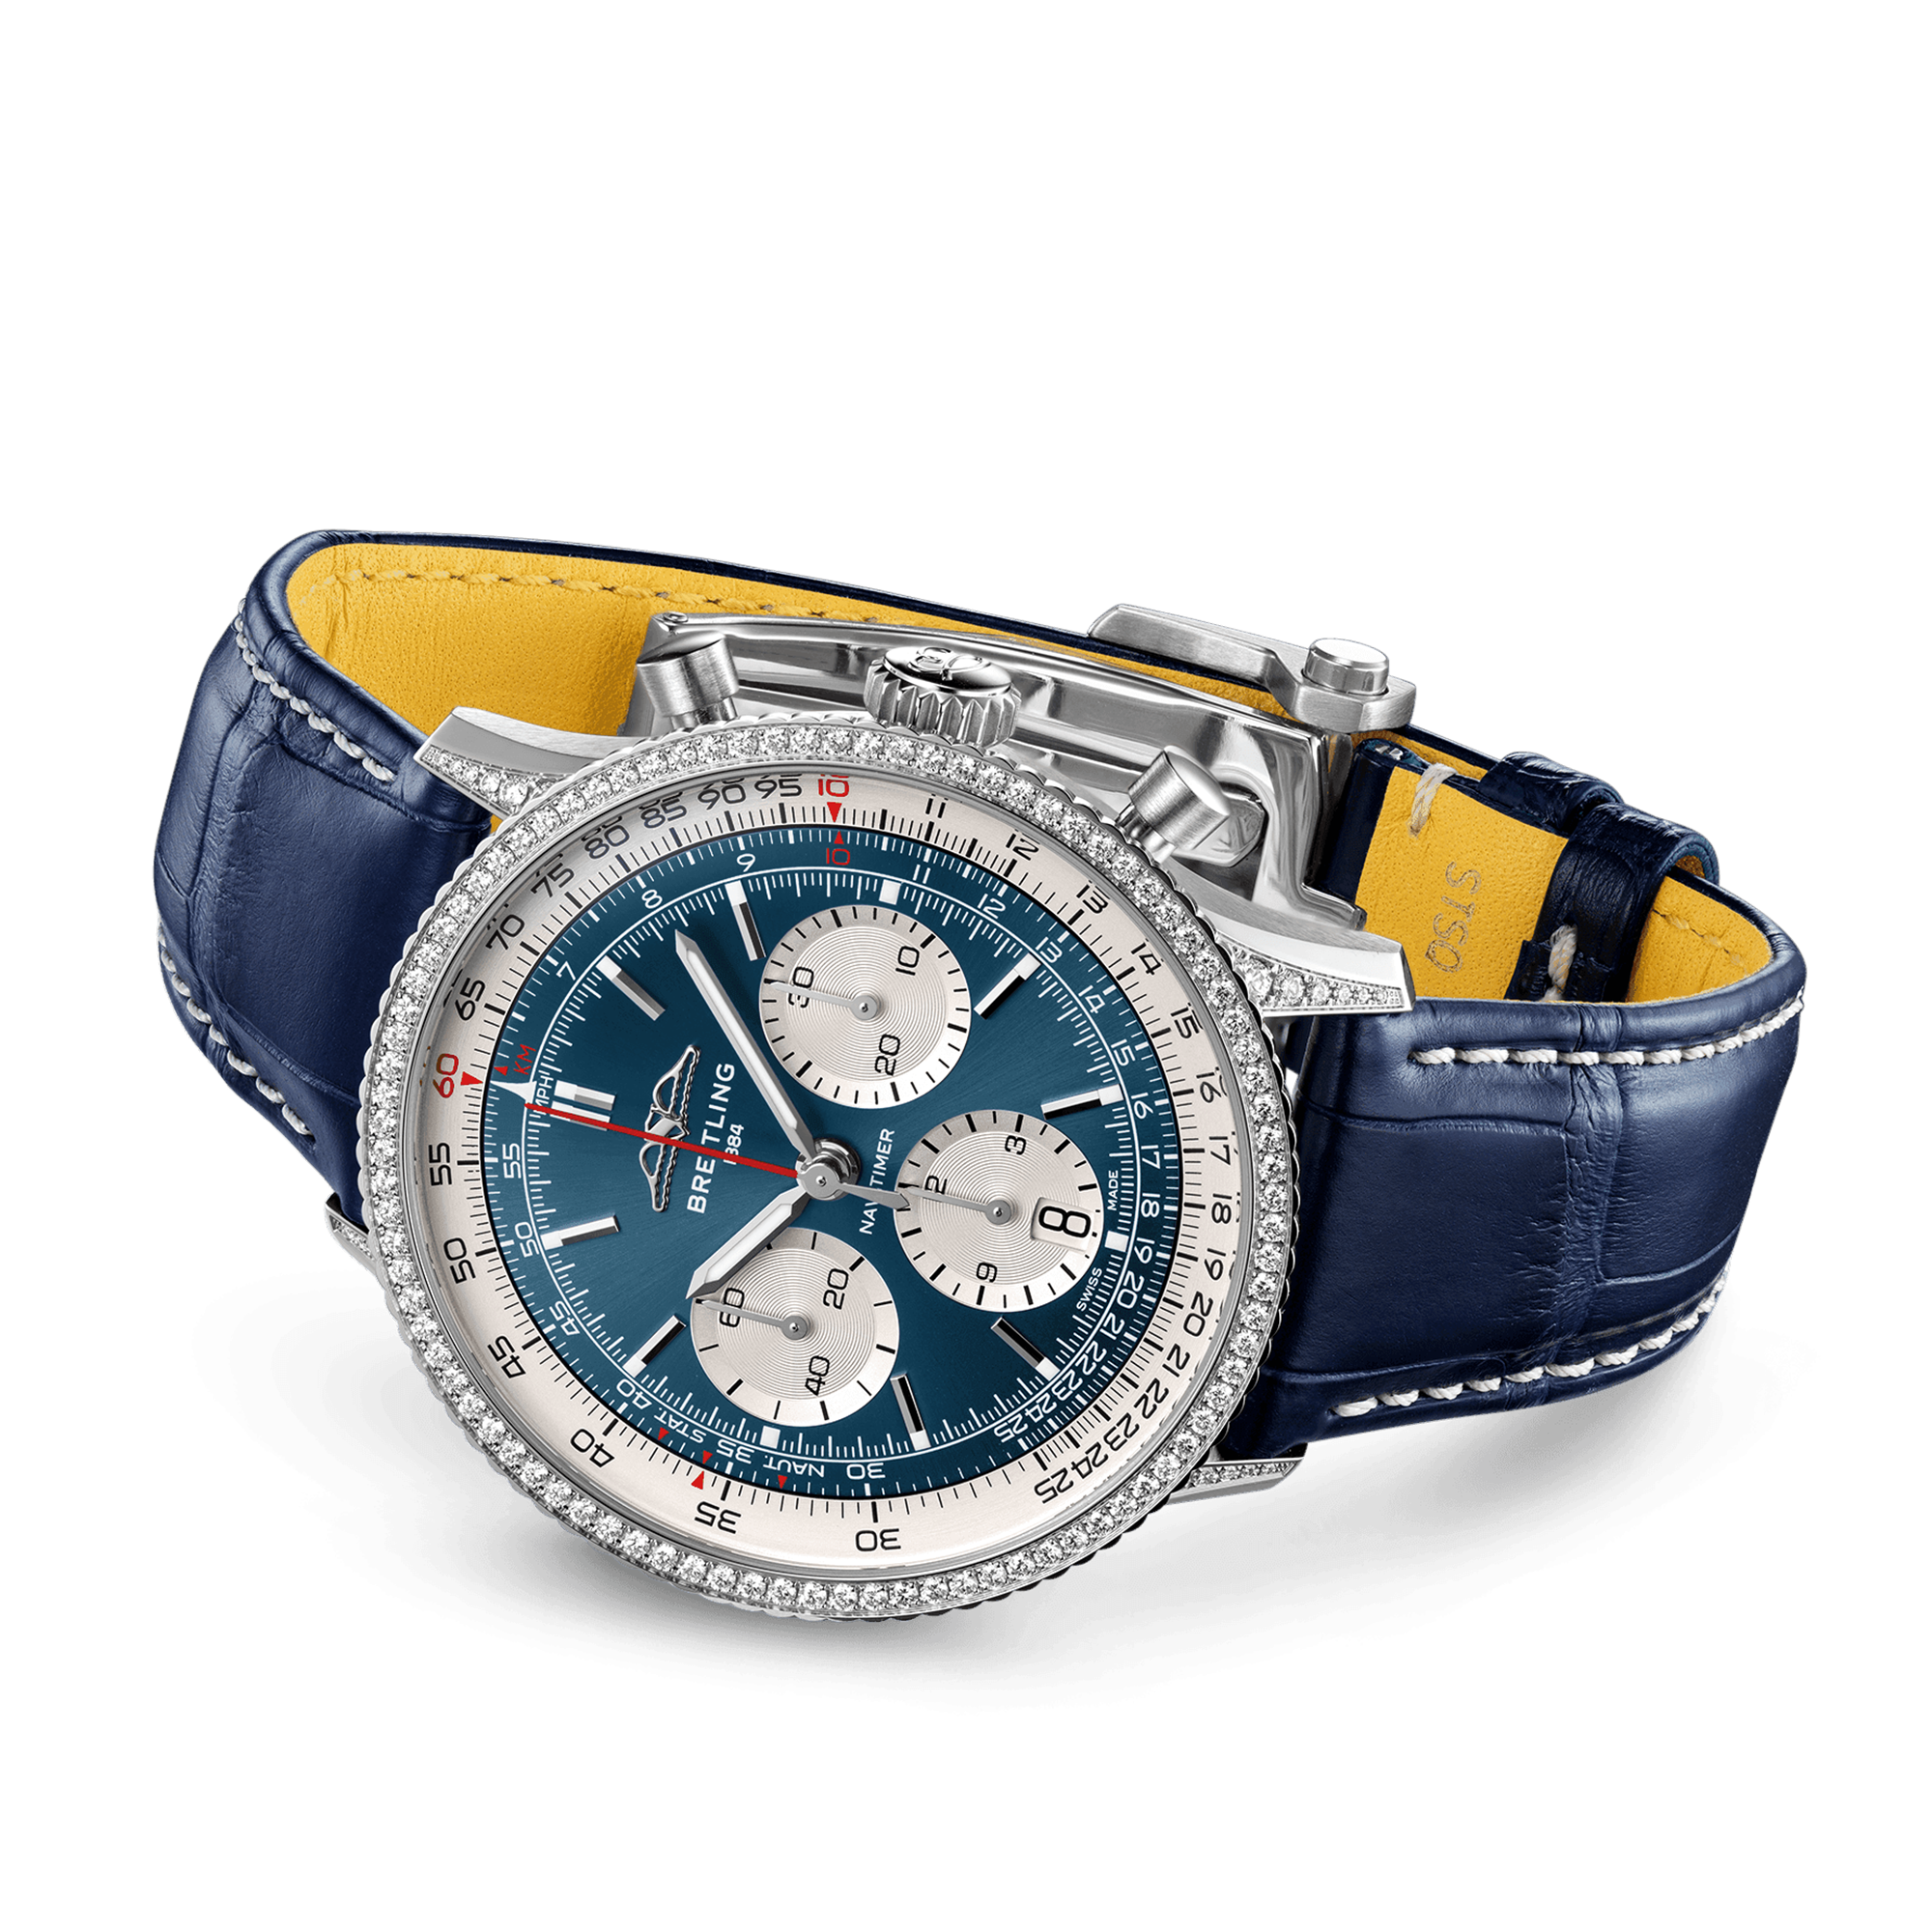 Navitimer Chronograph 41mm Blue Dial Diamond Bezel Watch